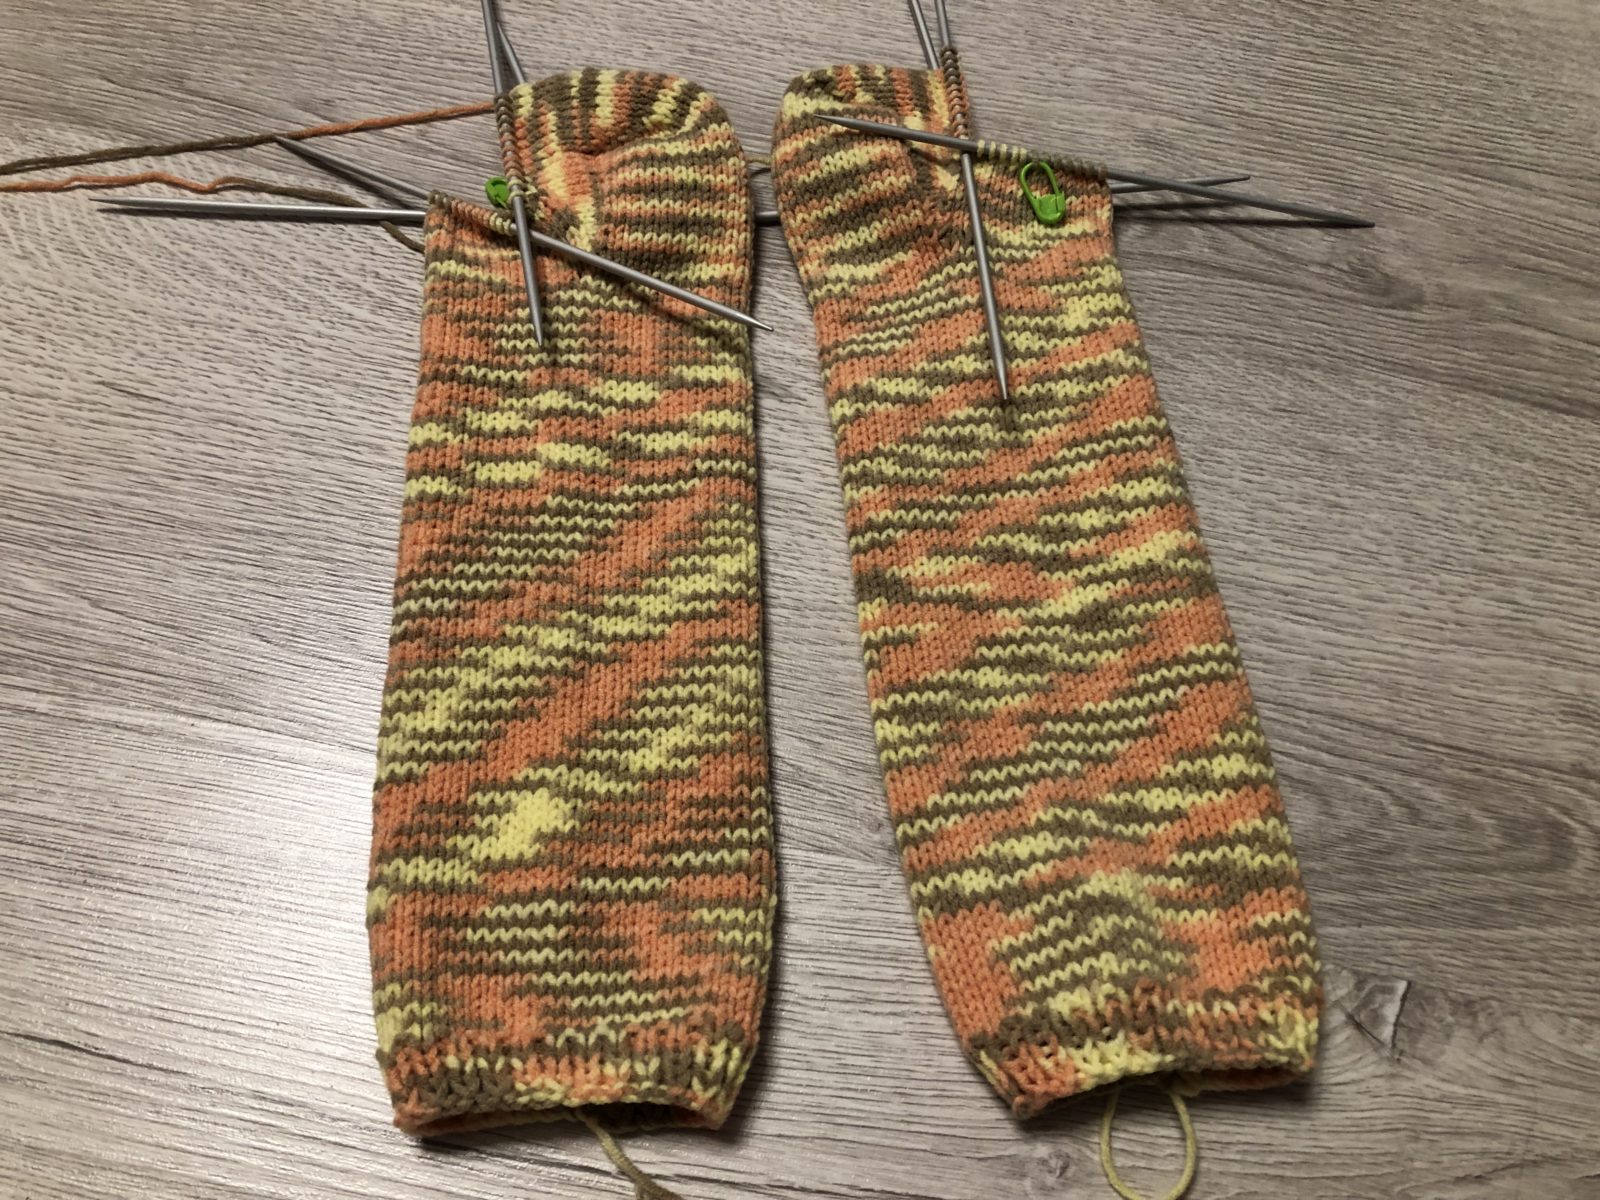 Вязание пяток носков спицами – описание схем вязания для начинающих фото, видео